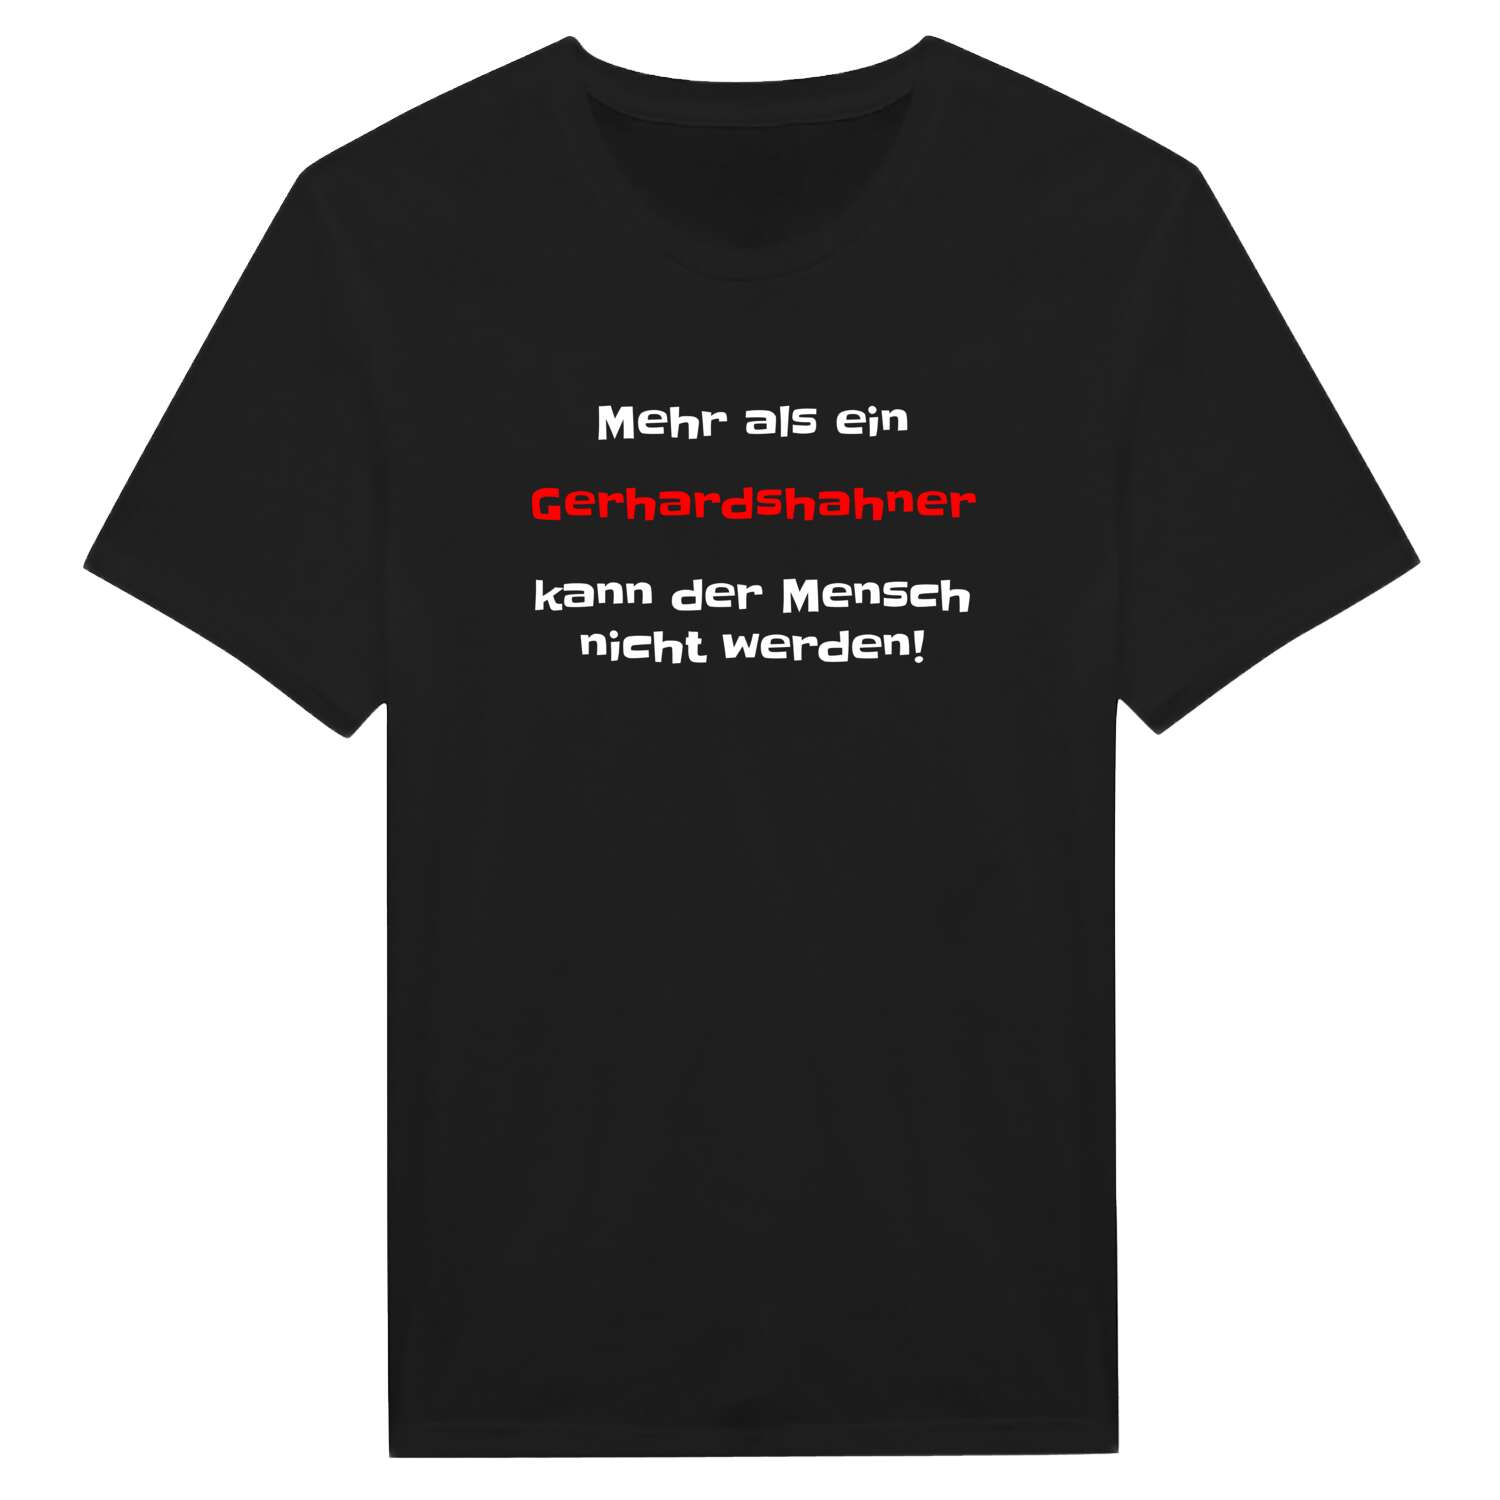 Gerhardshahn T-Shirt »Mehr als ein«